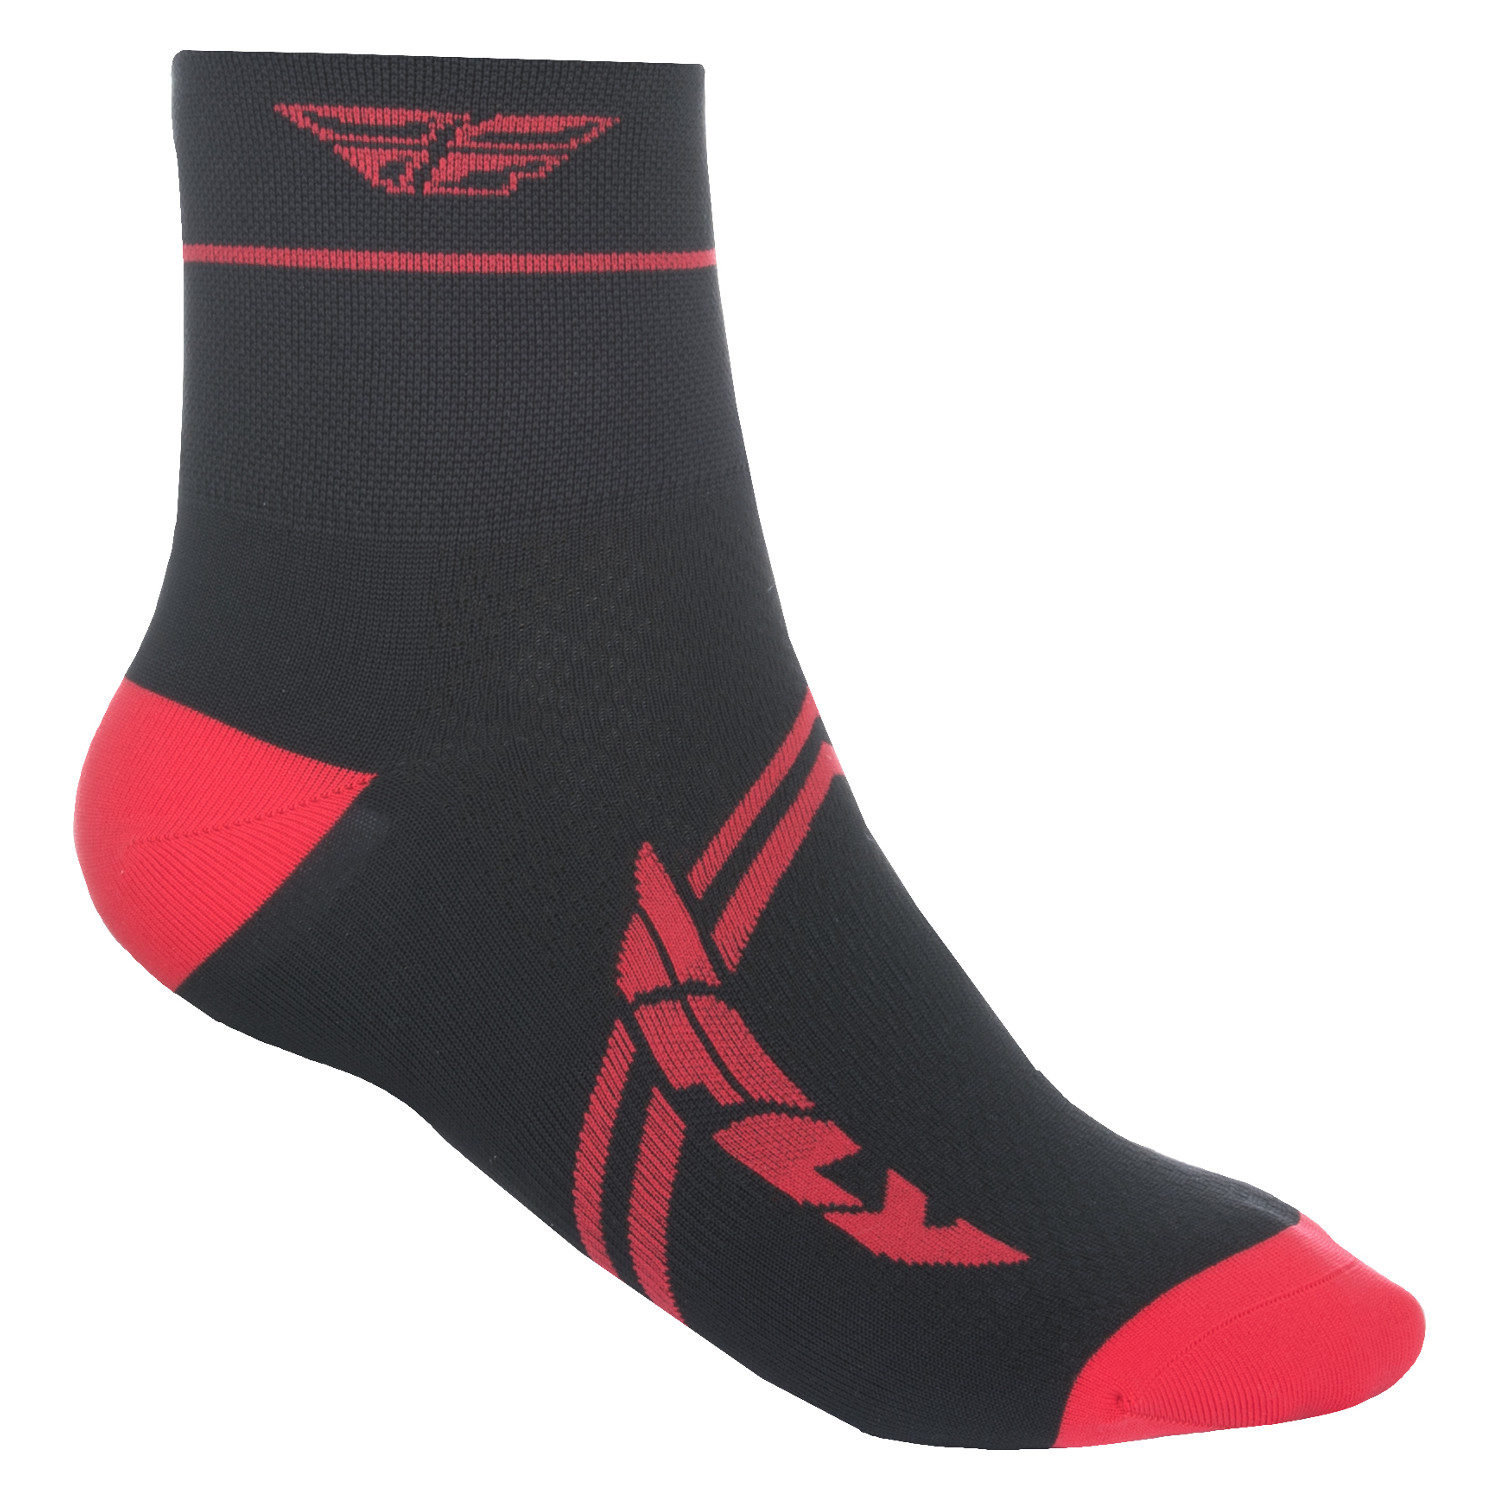 Fly Racing Socken Action Rot/Schwarz